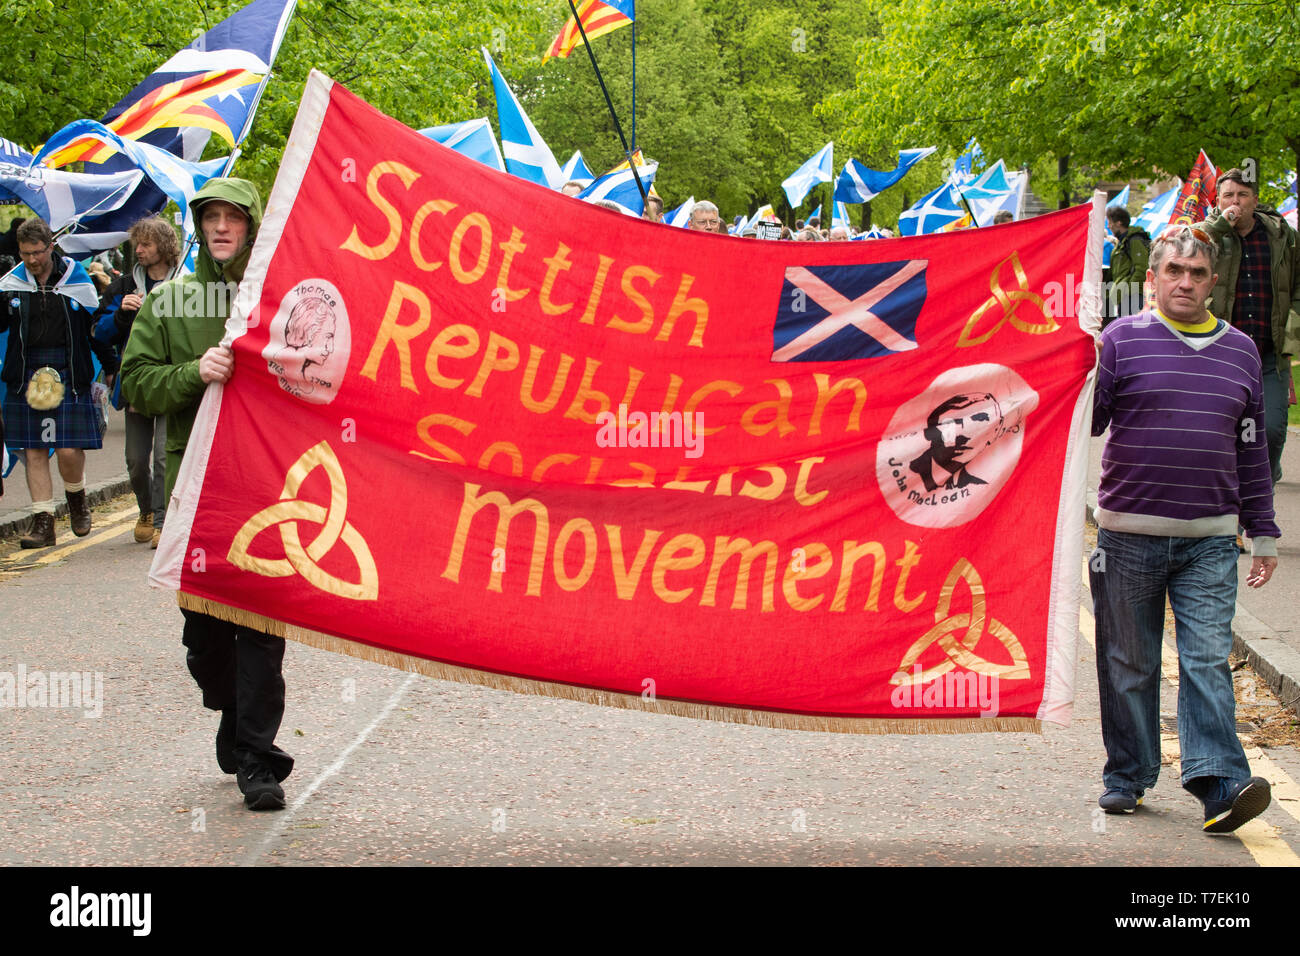 Scottish Republican Socialist Movement bannière lors d'indépendance écossaise à Glasgow Mars Mai 2019 Banque D'Images